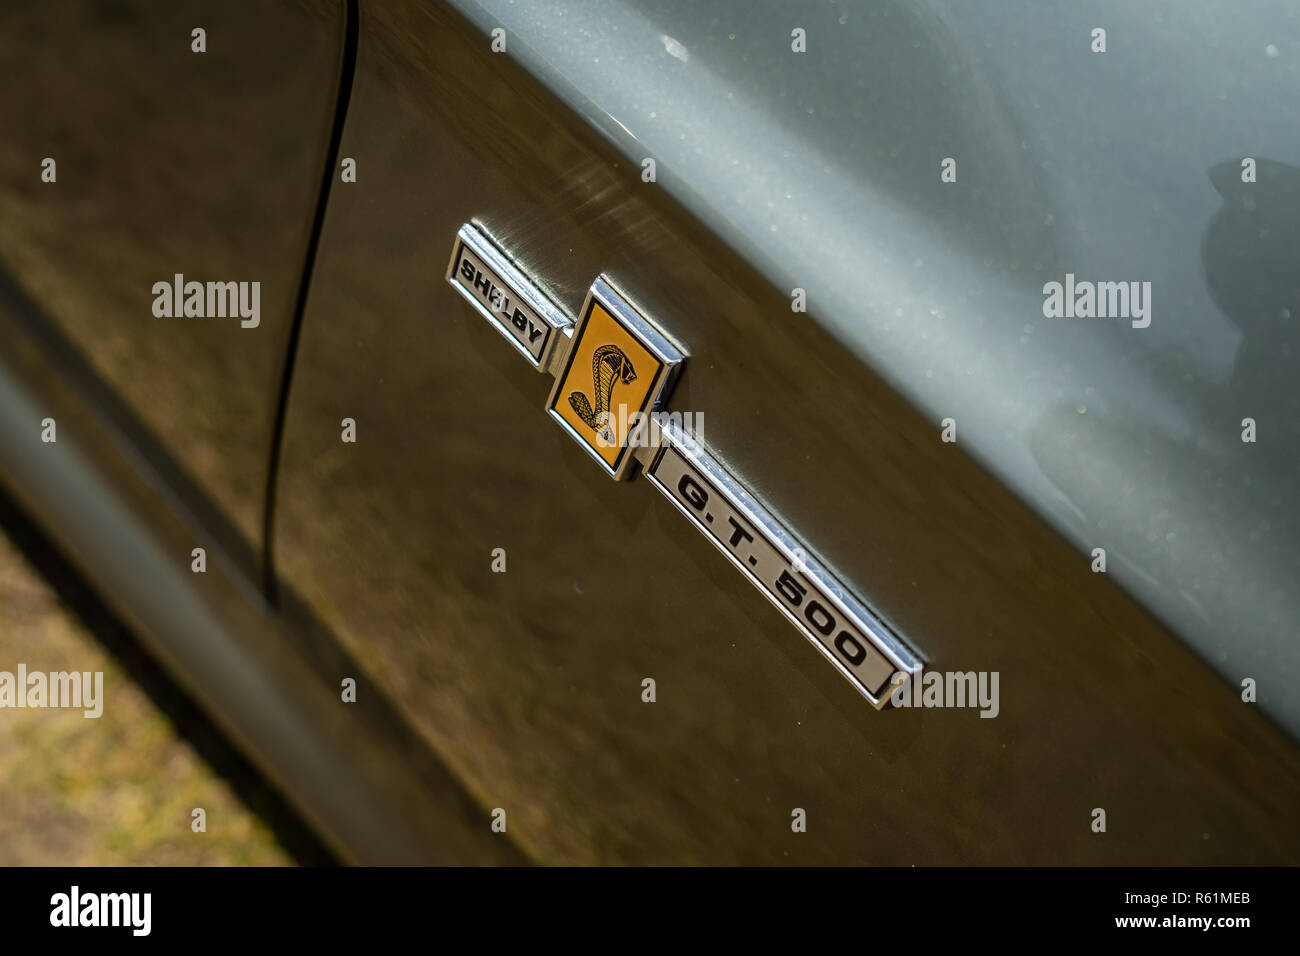 PAAREN IM GLIEN, Germania - 19 Maggio 2018: emblema di un pony auto Shelby Cobra GT500, (versione ad alte prestazioni della Ford Mustang). Die Oldtimer visualizza 20 Foto Stock